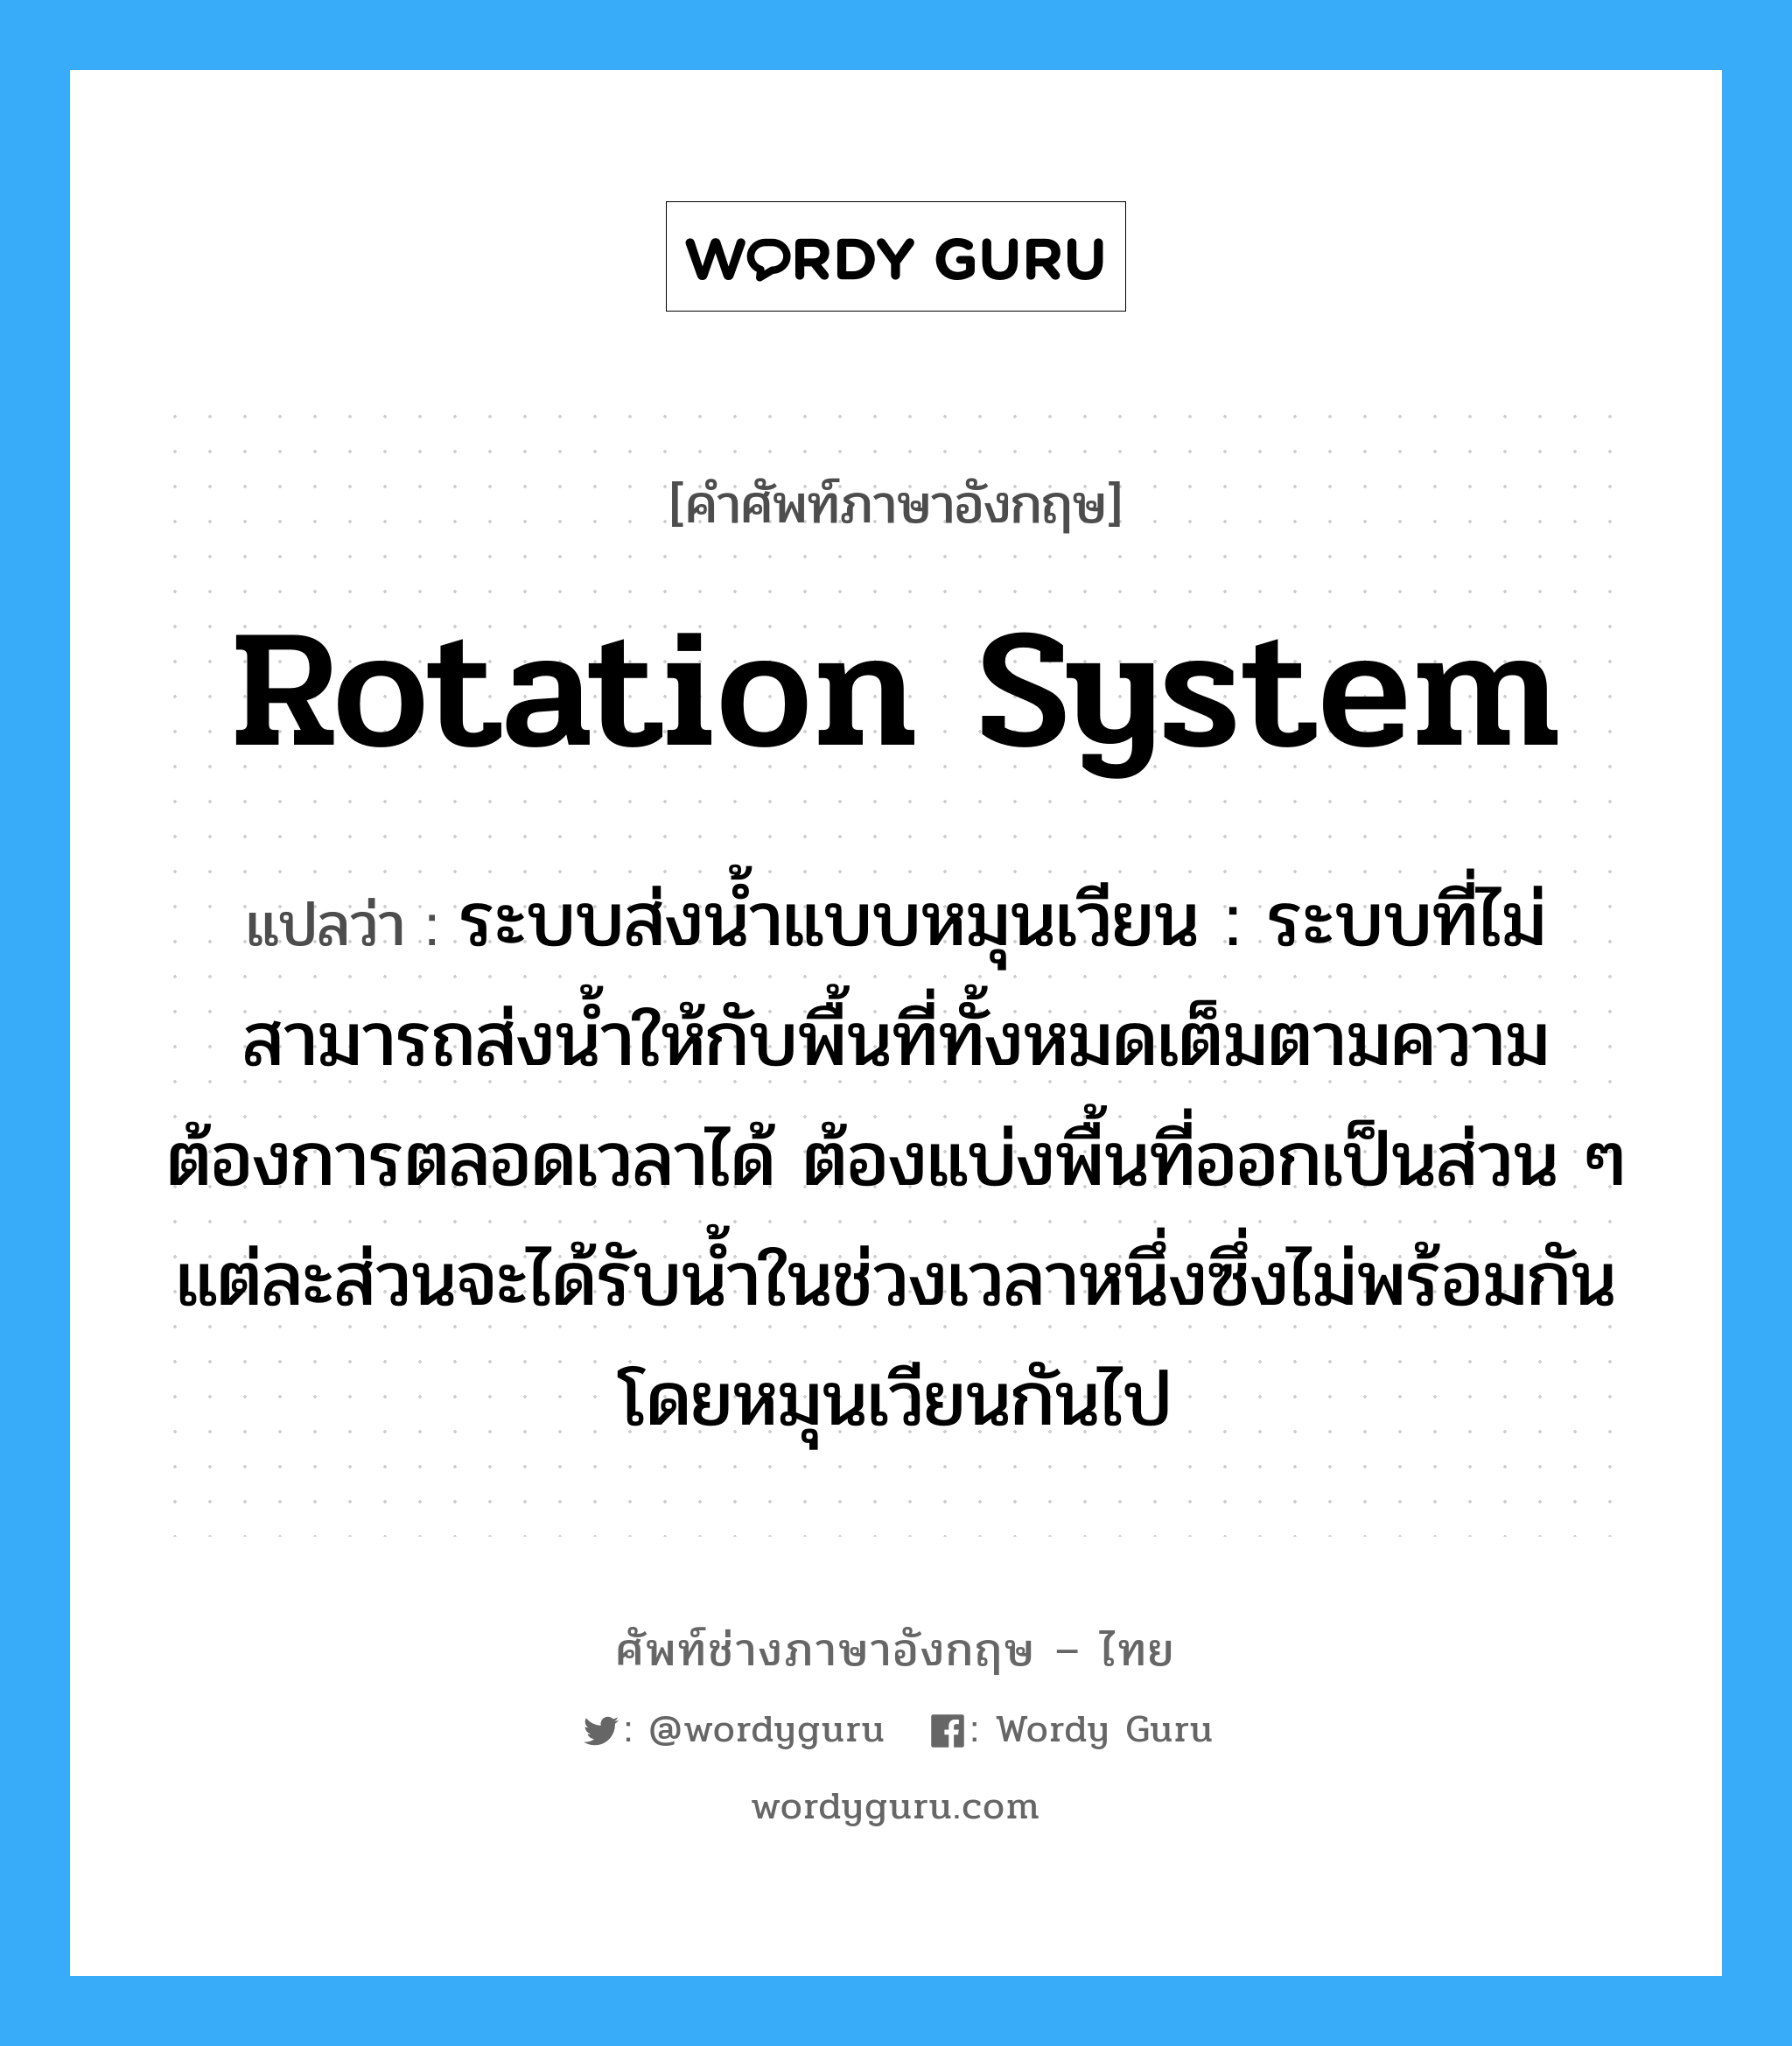 rotation system แปลว่า?, คำศัพท์ช่างภาษาอังกฤษ - ไทย rotation system คำศัพท์ภาษาอังกฤษ rotation system แปลว่า ระบบส่งน้ำแบบหมุนเวียน : ระบบที่ไม่สามารถส่งน้ำให้กับพื้นที่ทั้งหมดเต็มตามความต้องการตลอดเวลาได้ ต้องแบ่งพื้นที่ออกเป็นส่วน ๆ แต่ละส่วนจะได้รับน้ำในช่วงเวลาหนึ่งซึ่งไม่พร้อมกัน โดยหมุนเวียนกันไป